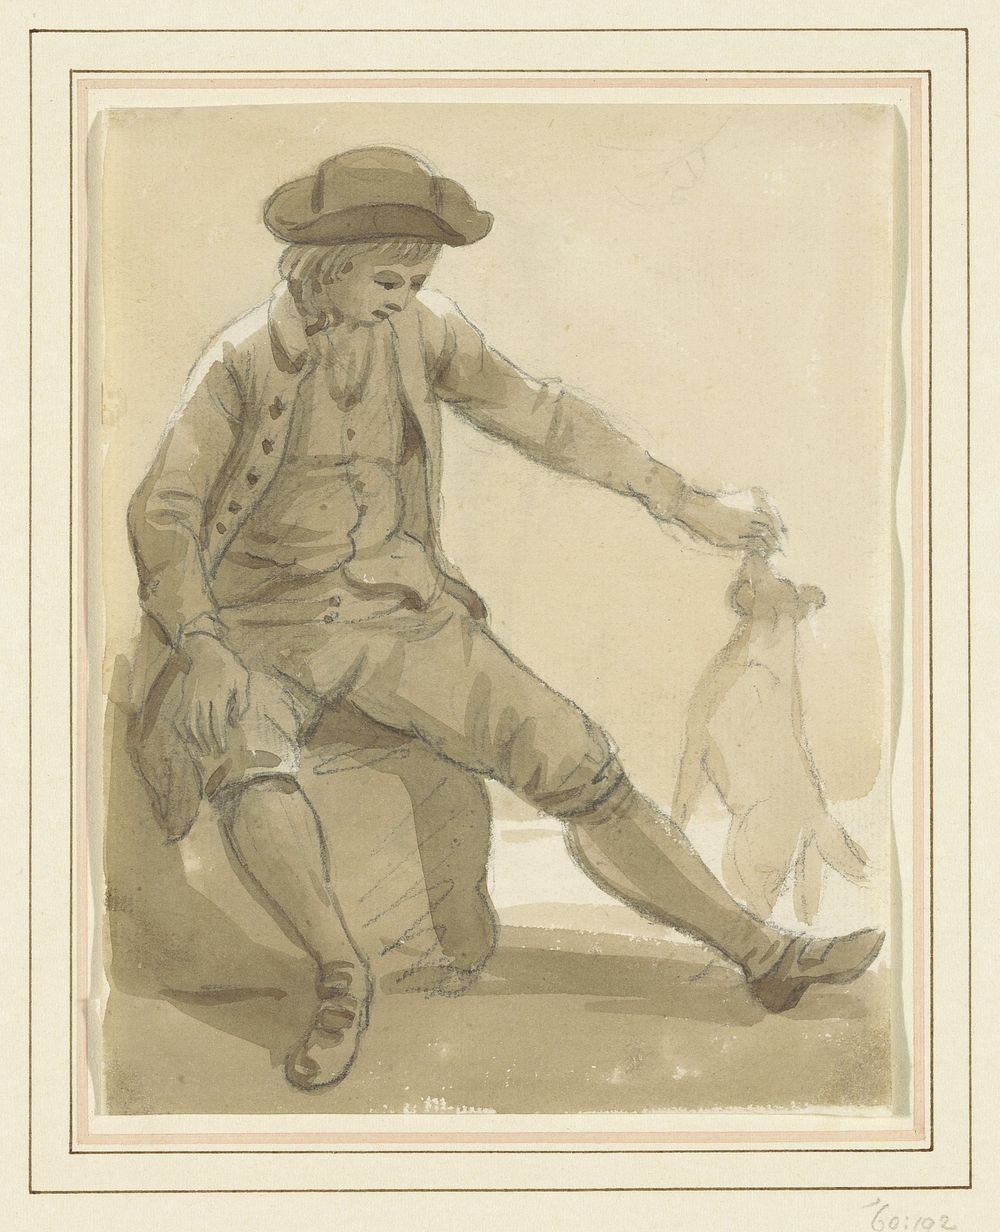 Jongen spelend met een hond (1735 - 1809) by Paul Sandby